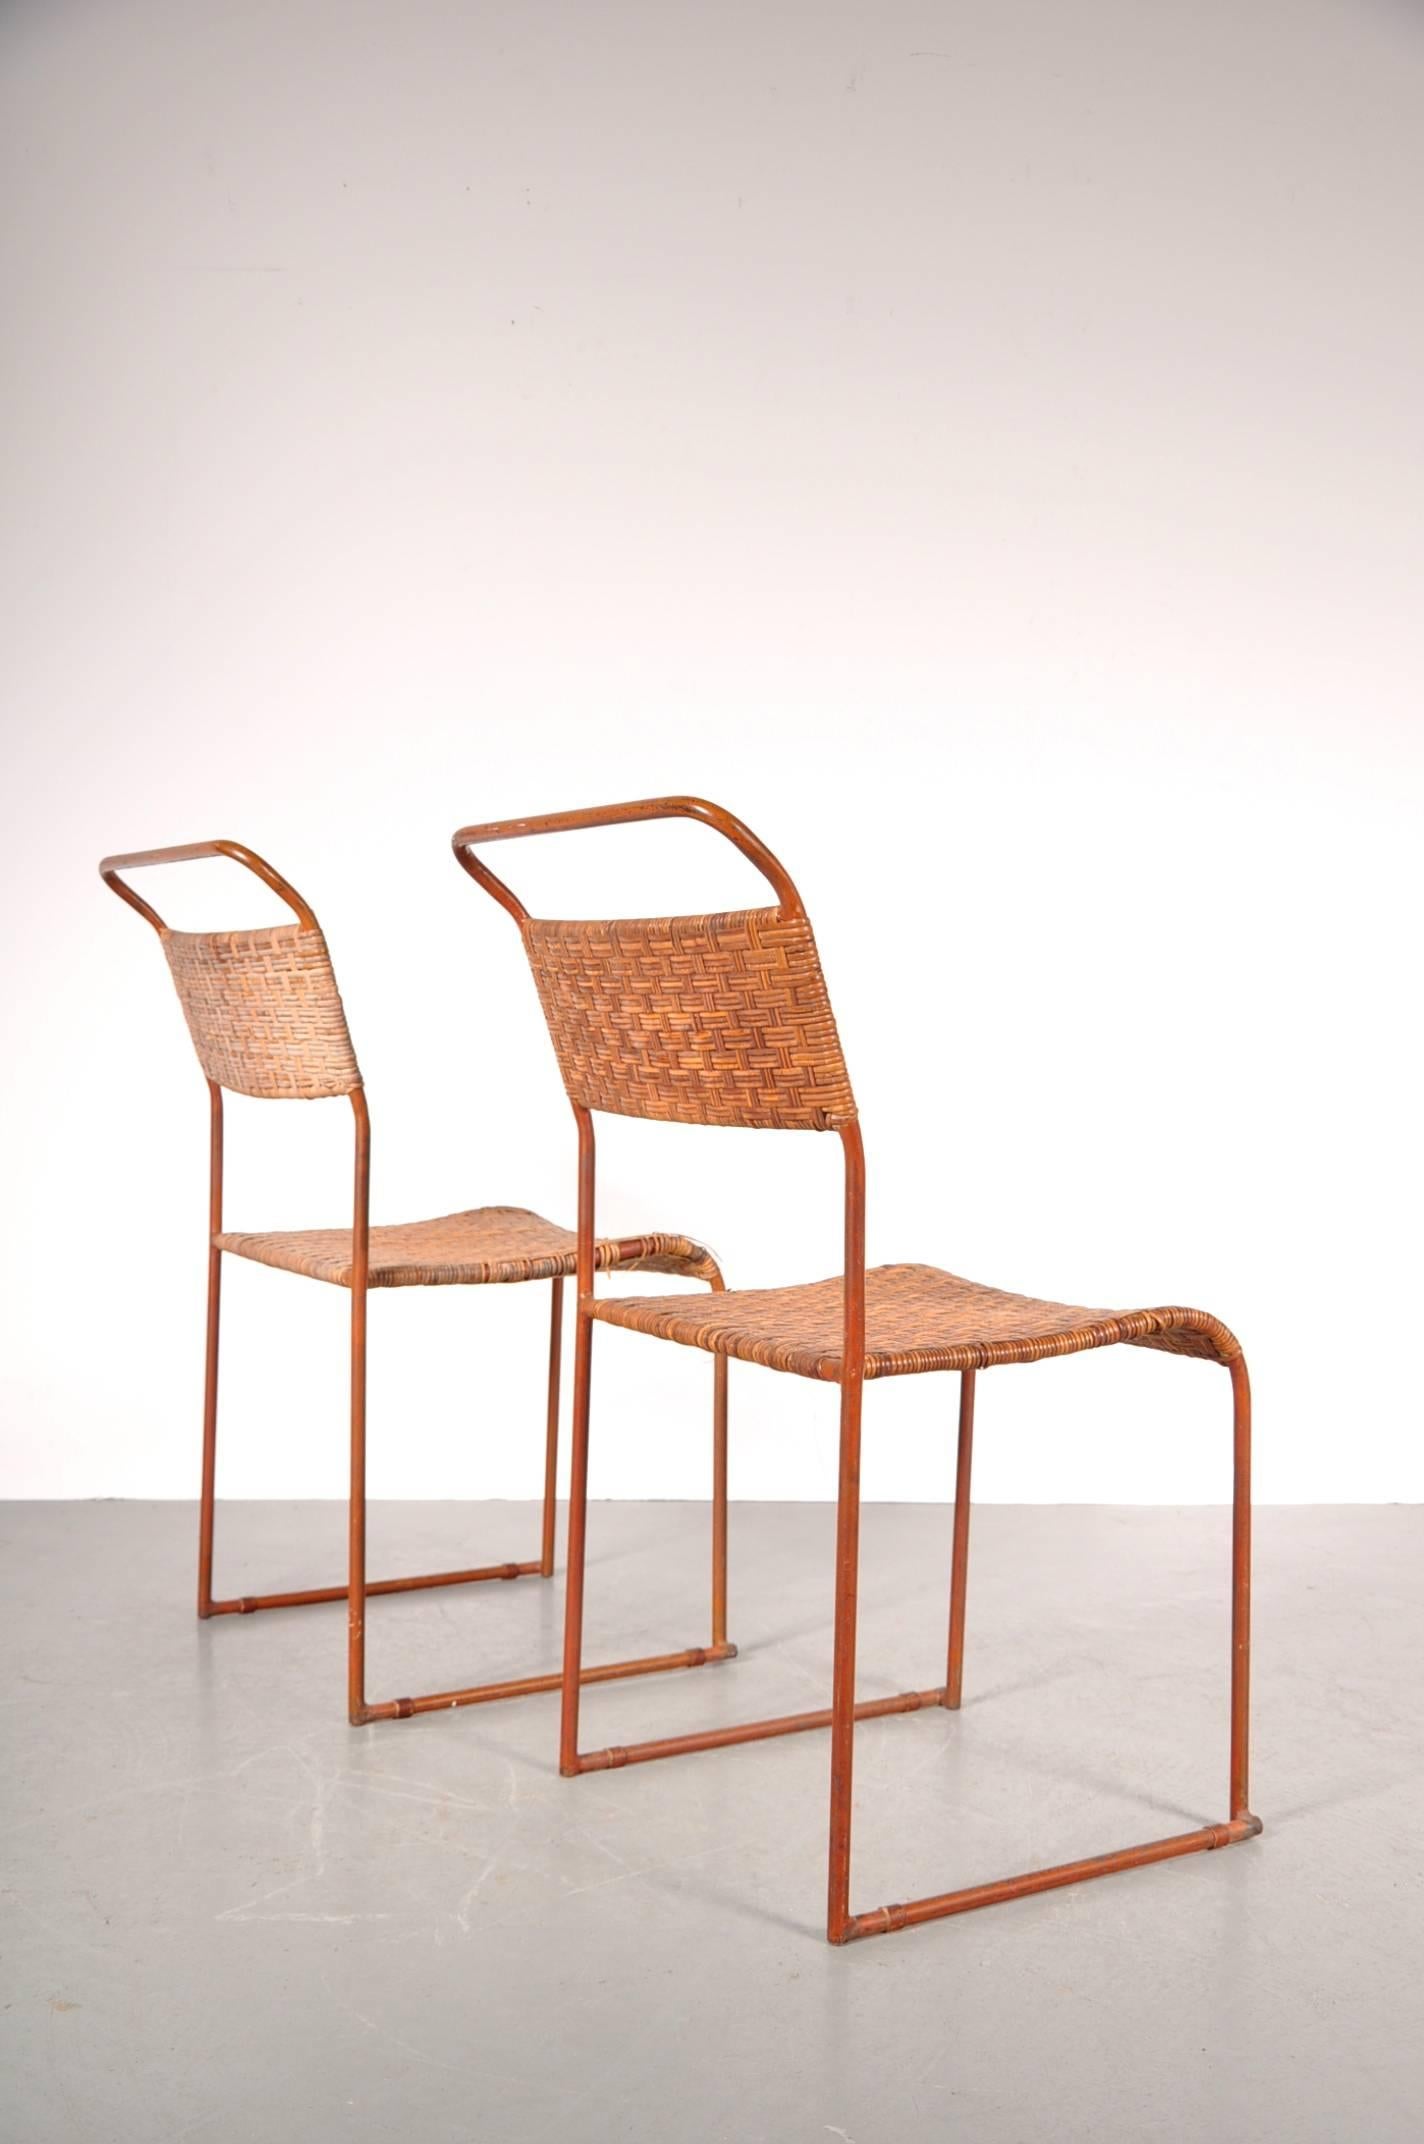 Erstaunlicher Satz von zwei seltenen Bauhaus-Prototyp-Essstühlen, hergestellt um 1930.

Diese wunderschön gearbeiteten Stühle haben ein Metallgestell mit geflochtenen Rattansitzen und Rückenlehnen. Einer der Stühle ist noch in gutem Zustand, der